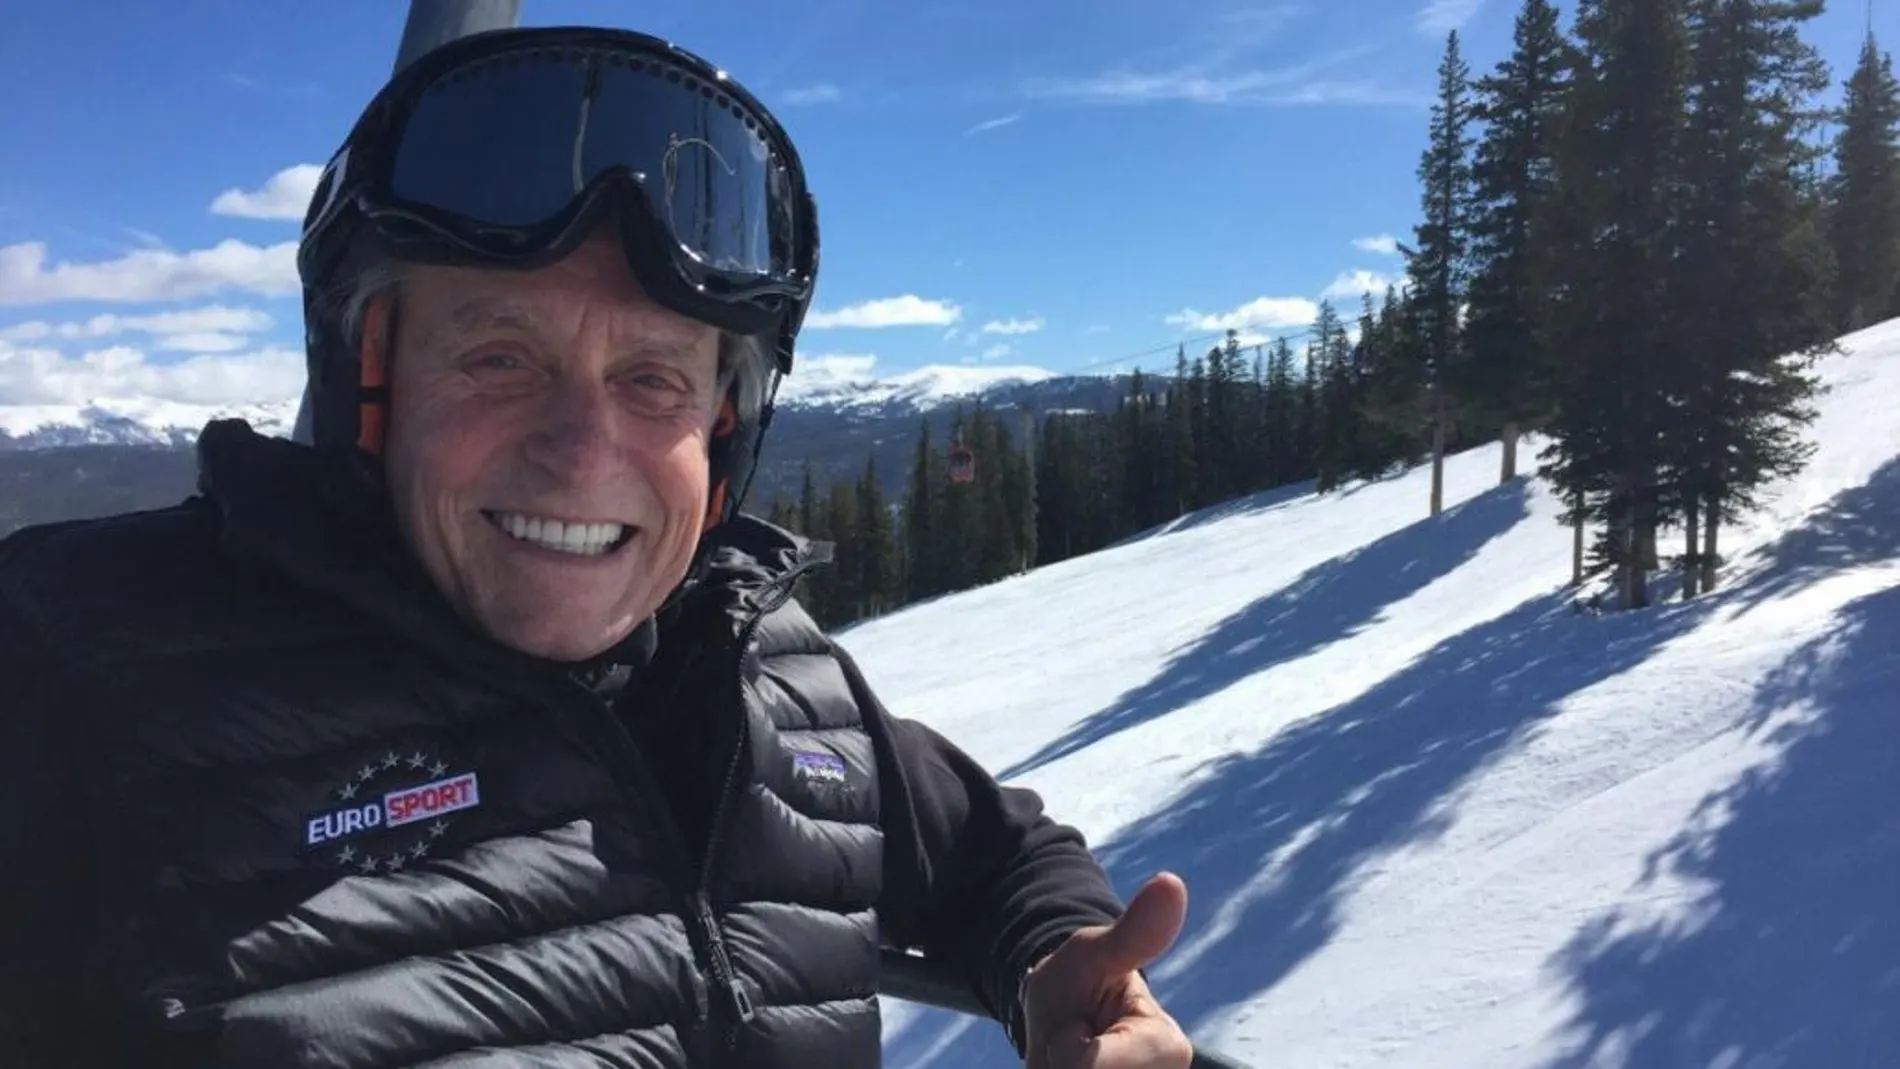 Michael Douglas ha combatido la «bola de nieve» informativa alejándose del mundanal ruido mediático y compartiendo en las redes sociales una amena y saludable semana de esquí en compañía de su mujer